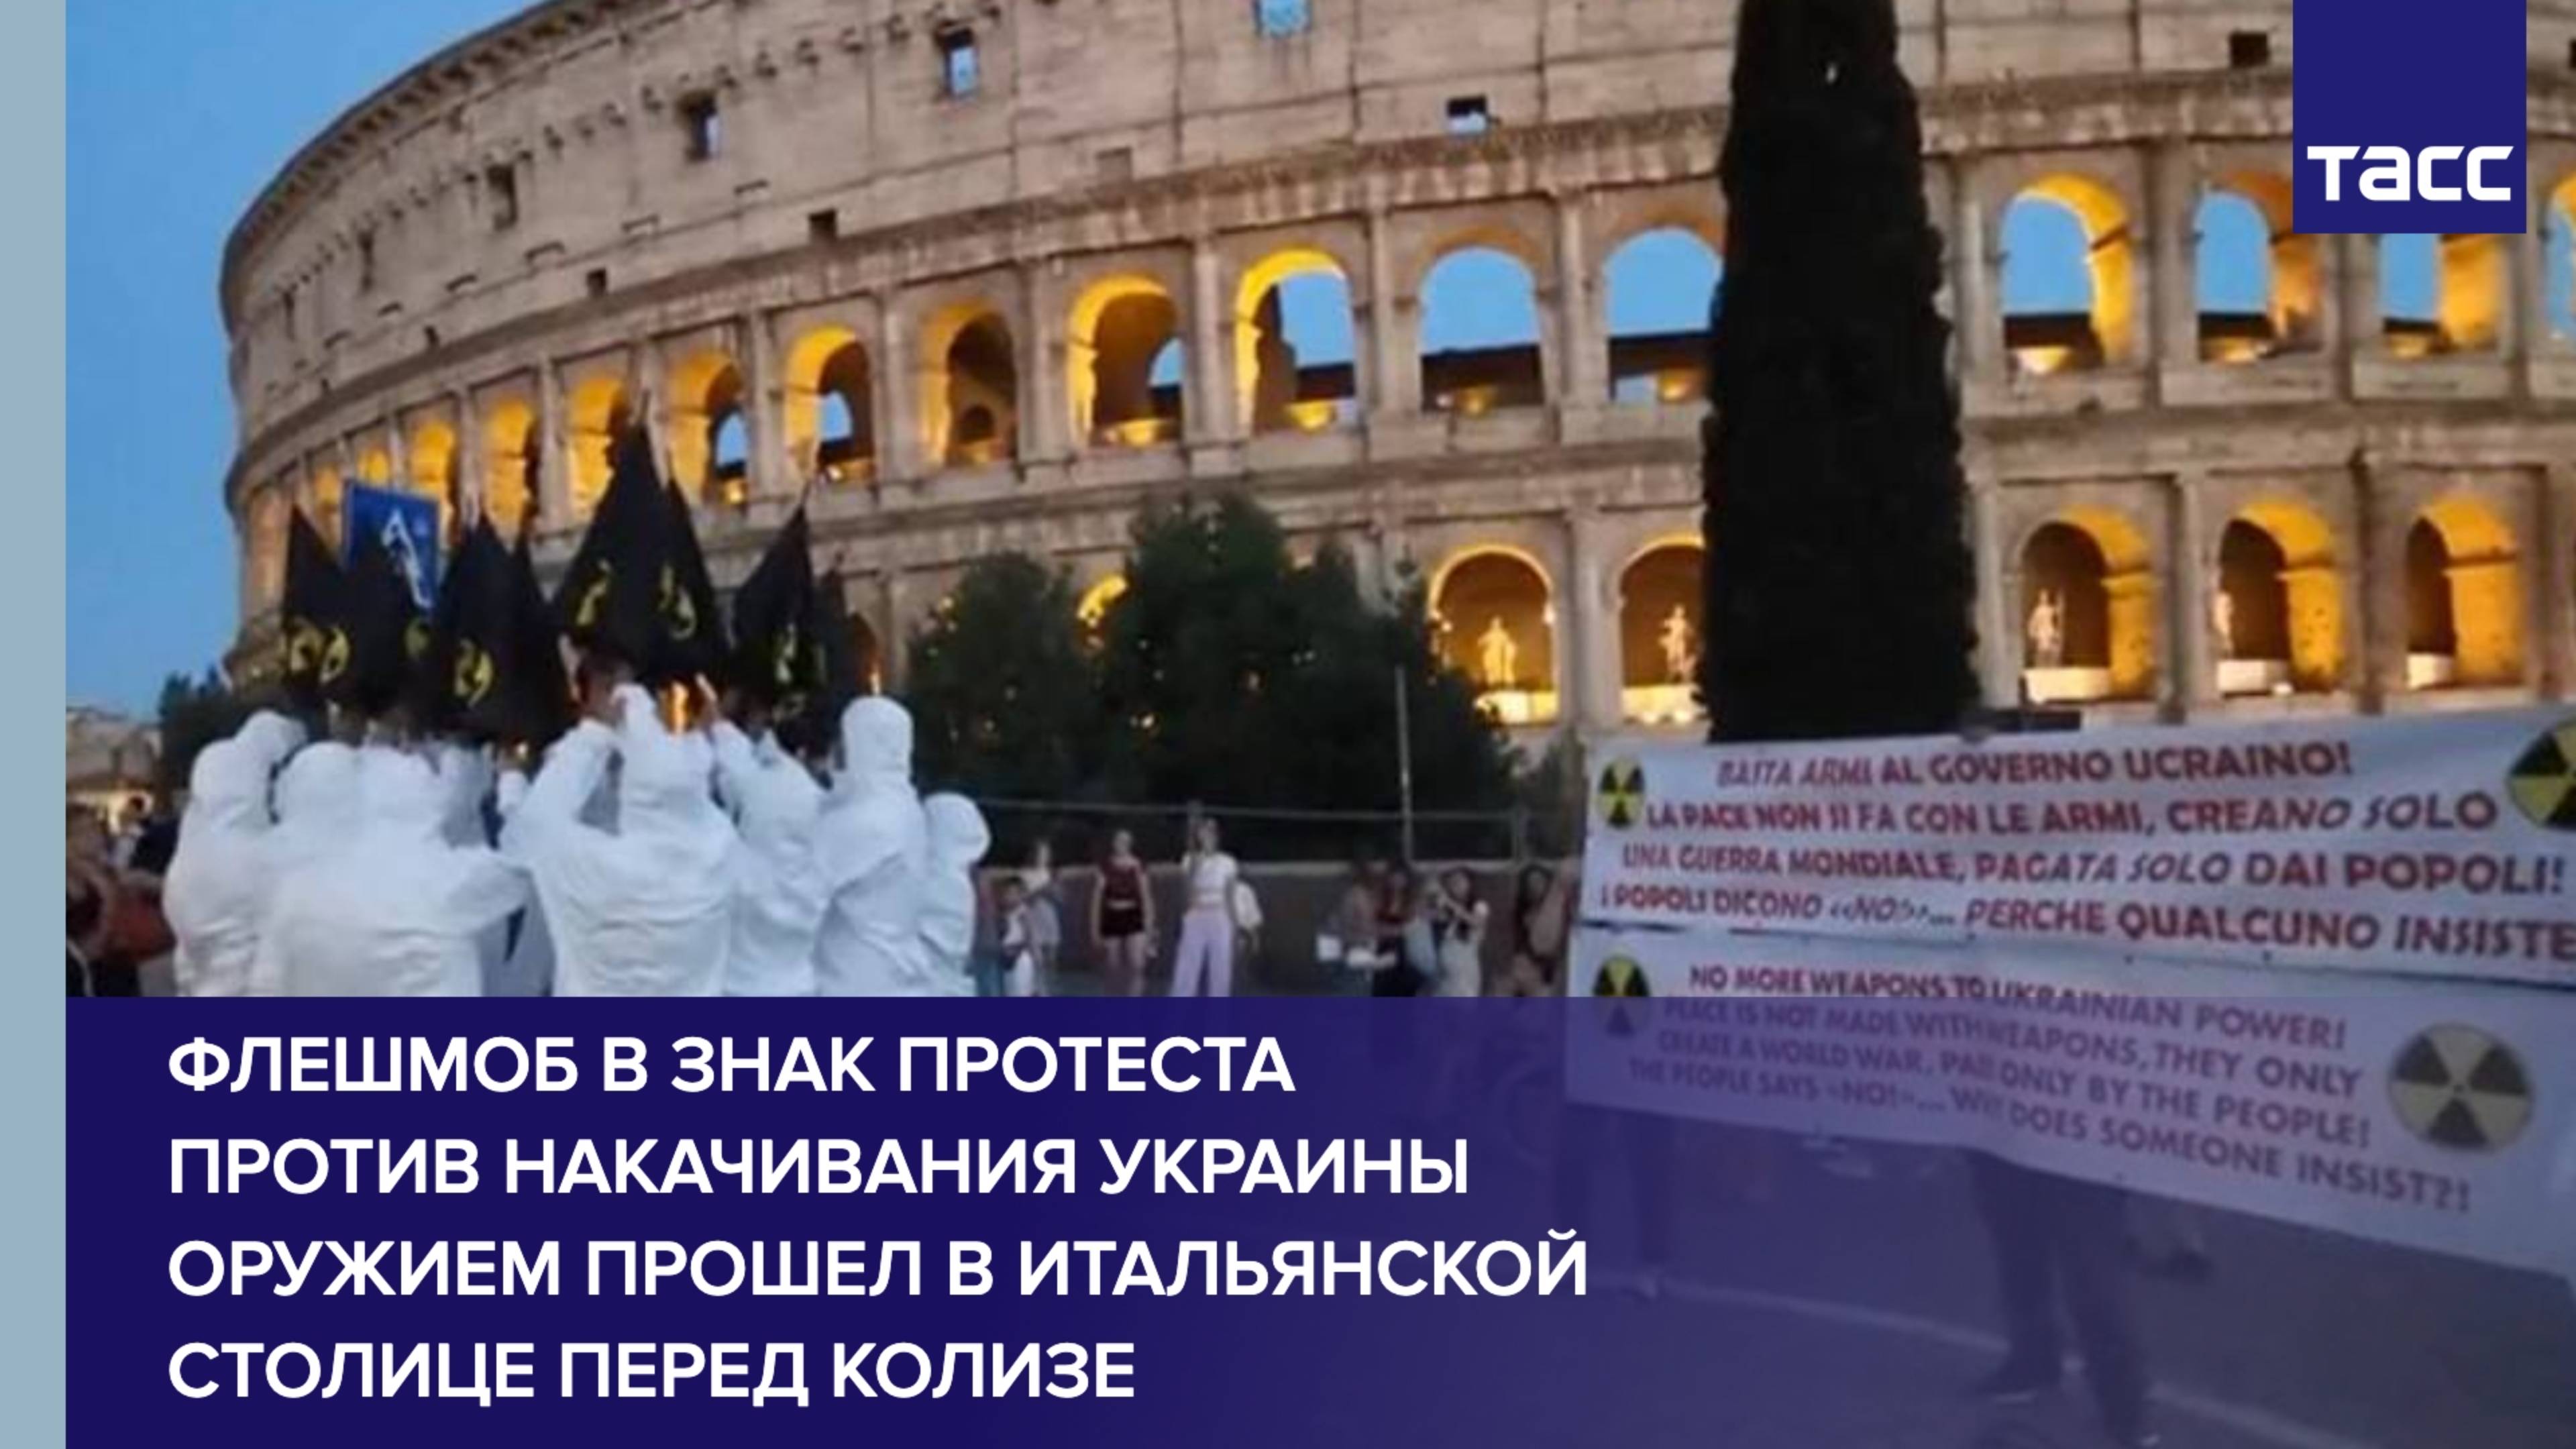 Флешмоб в знак протеста против накачивания Украины оружием прошел в итальянской столице перед Колиз